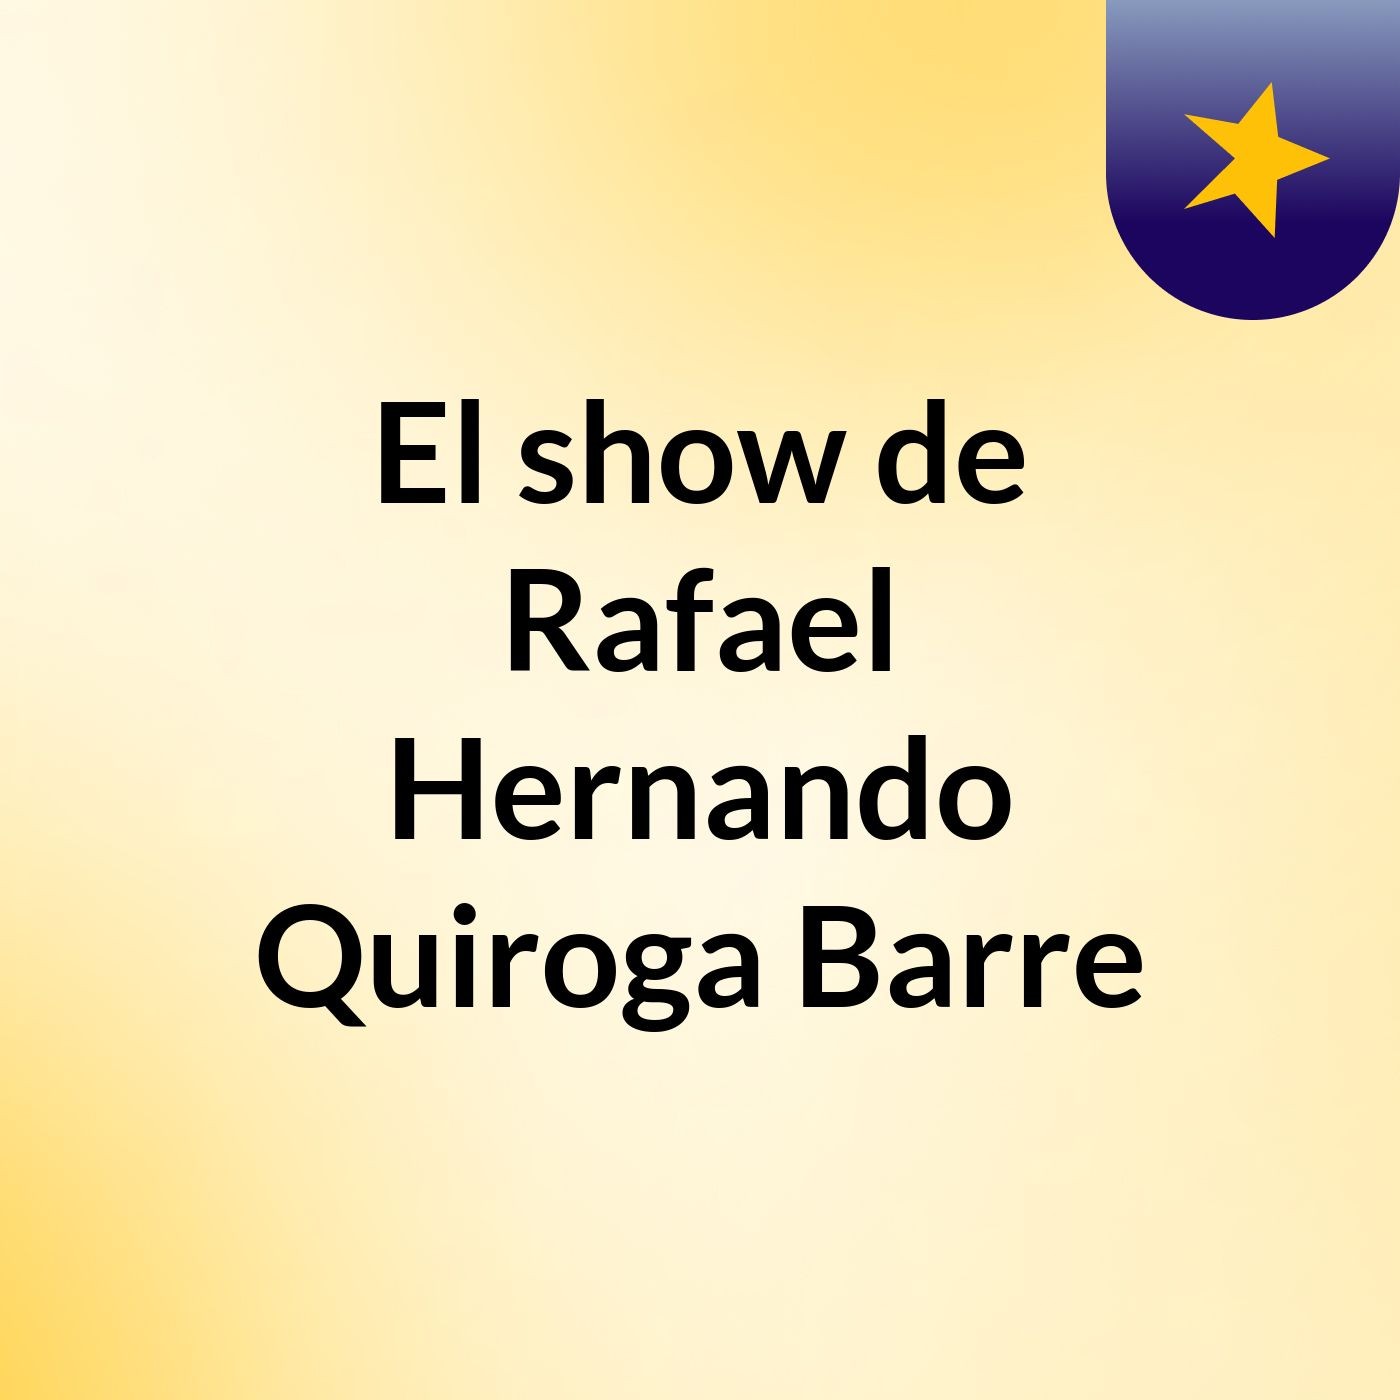 El show de Rafael Hernando Quiroga Barre